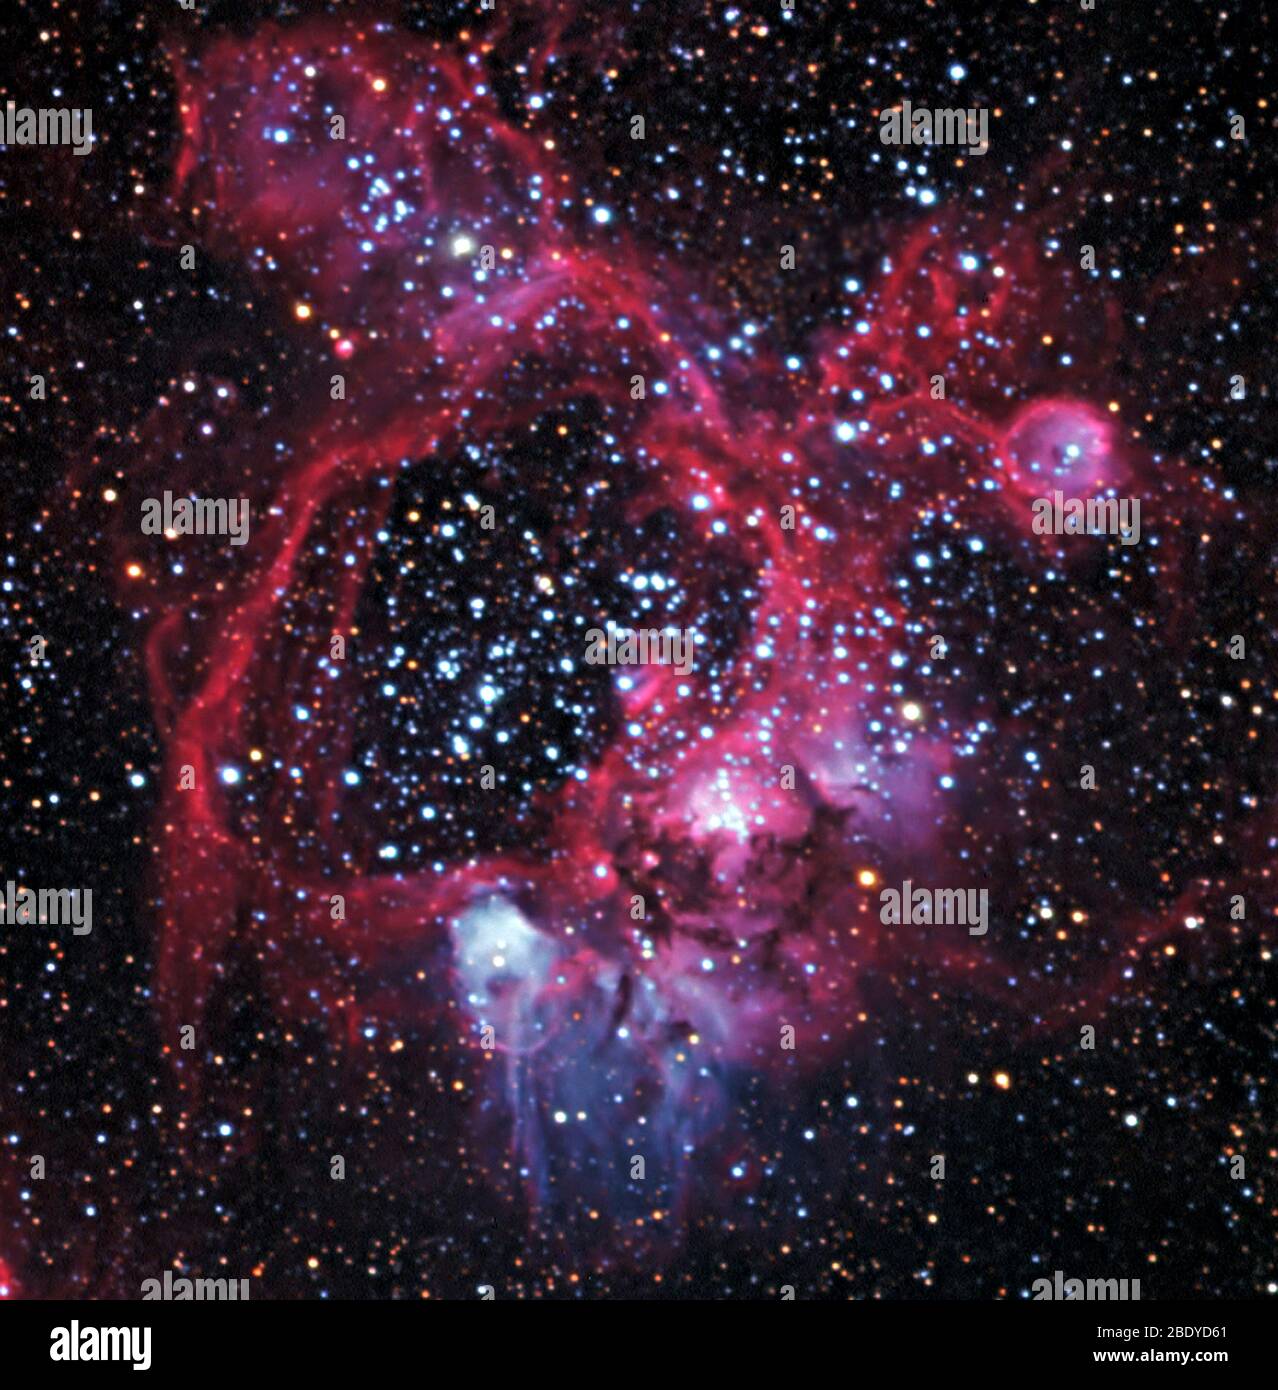 Emission Nebula with Superbubble, N44 Stock Photo